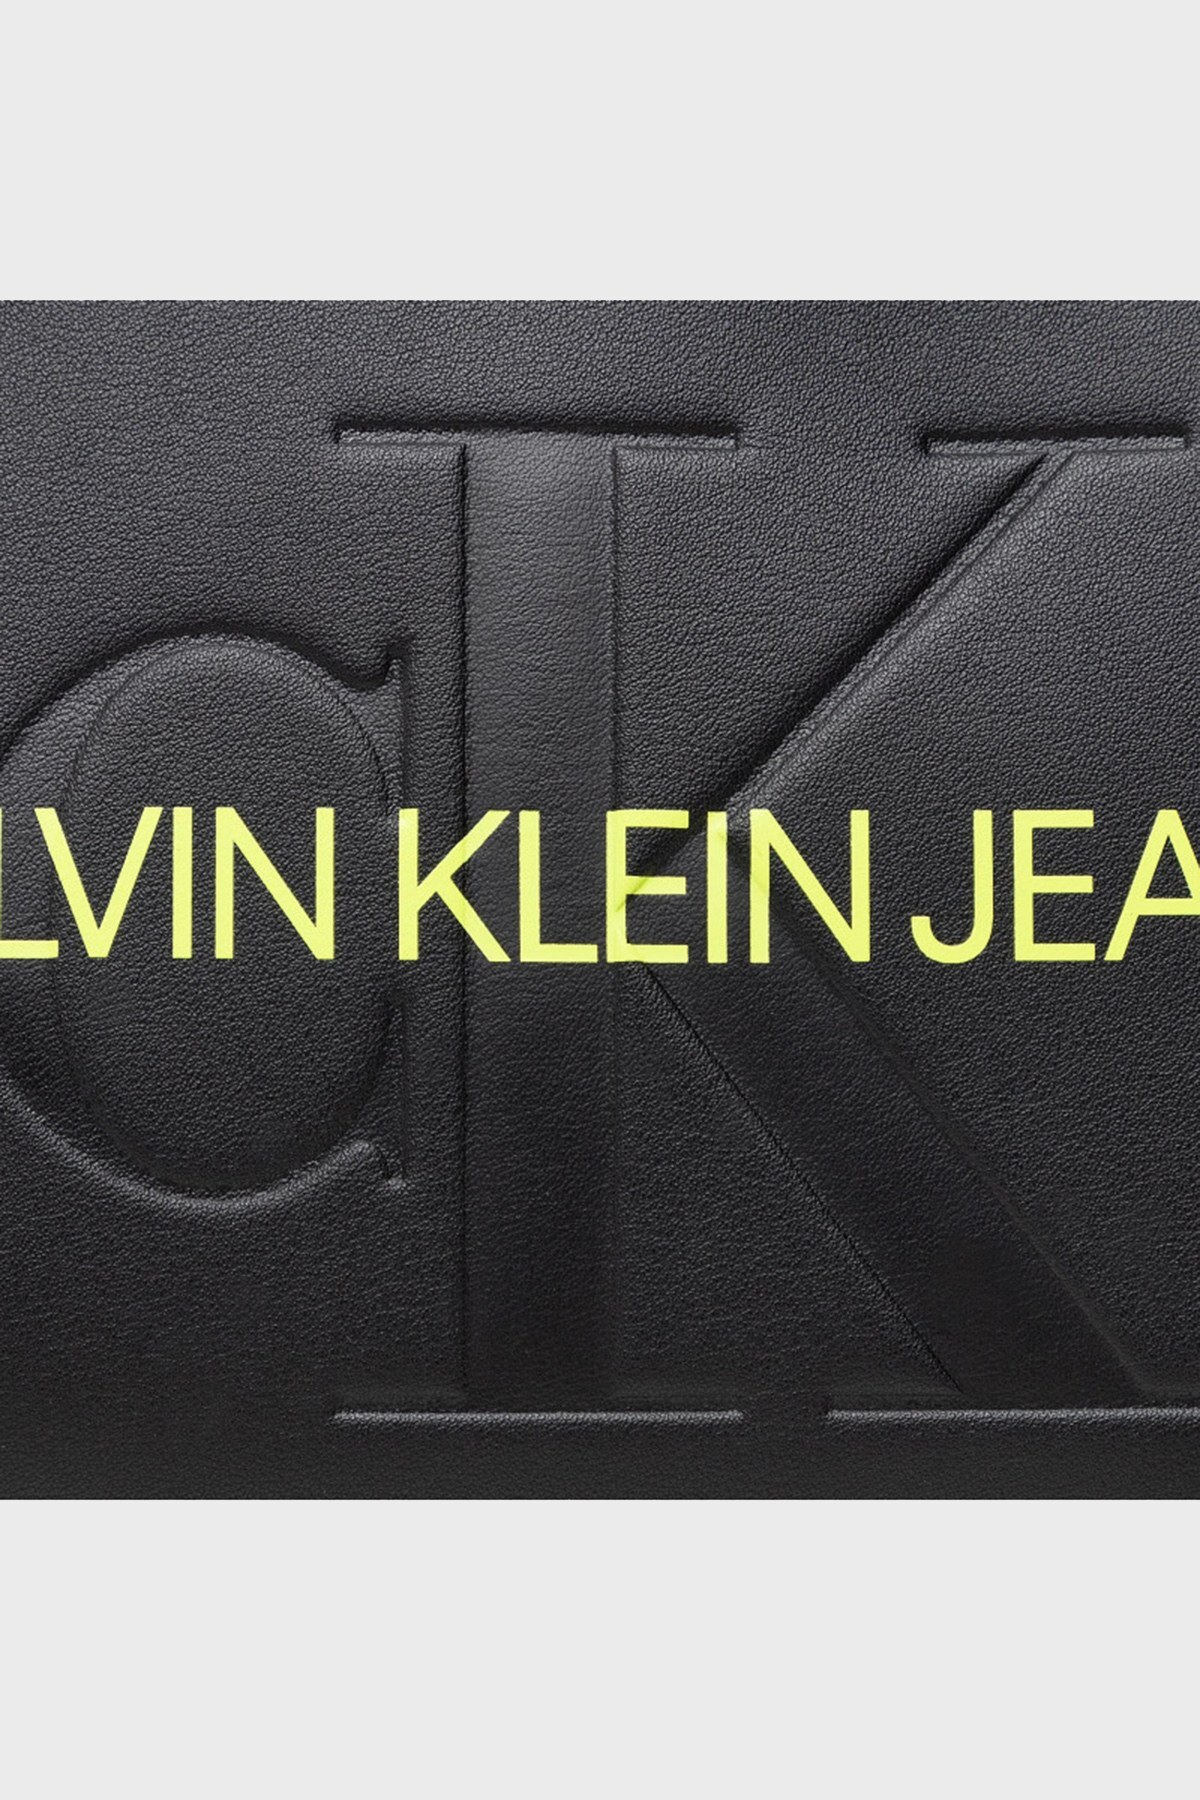 Calvin Klein Logolu Zincir Askılı Bayan Çanta K60K608688 BDS SİYAH